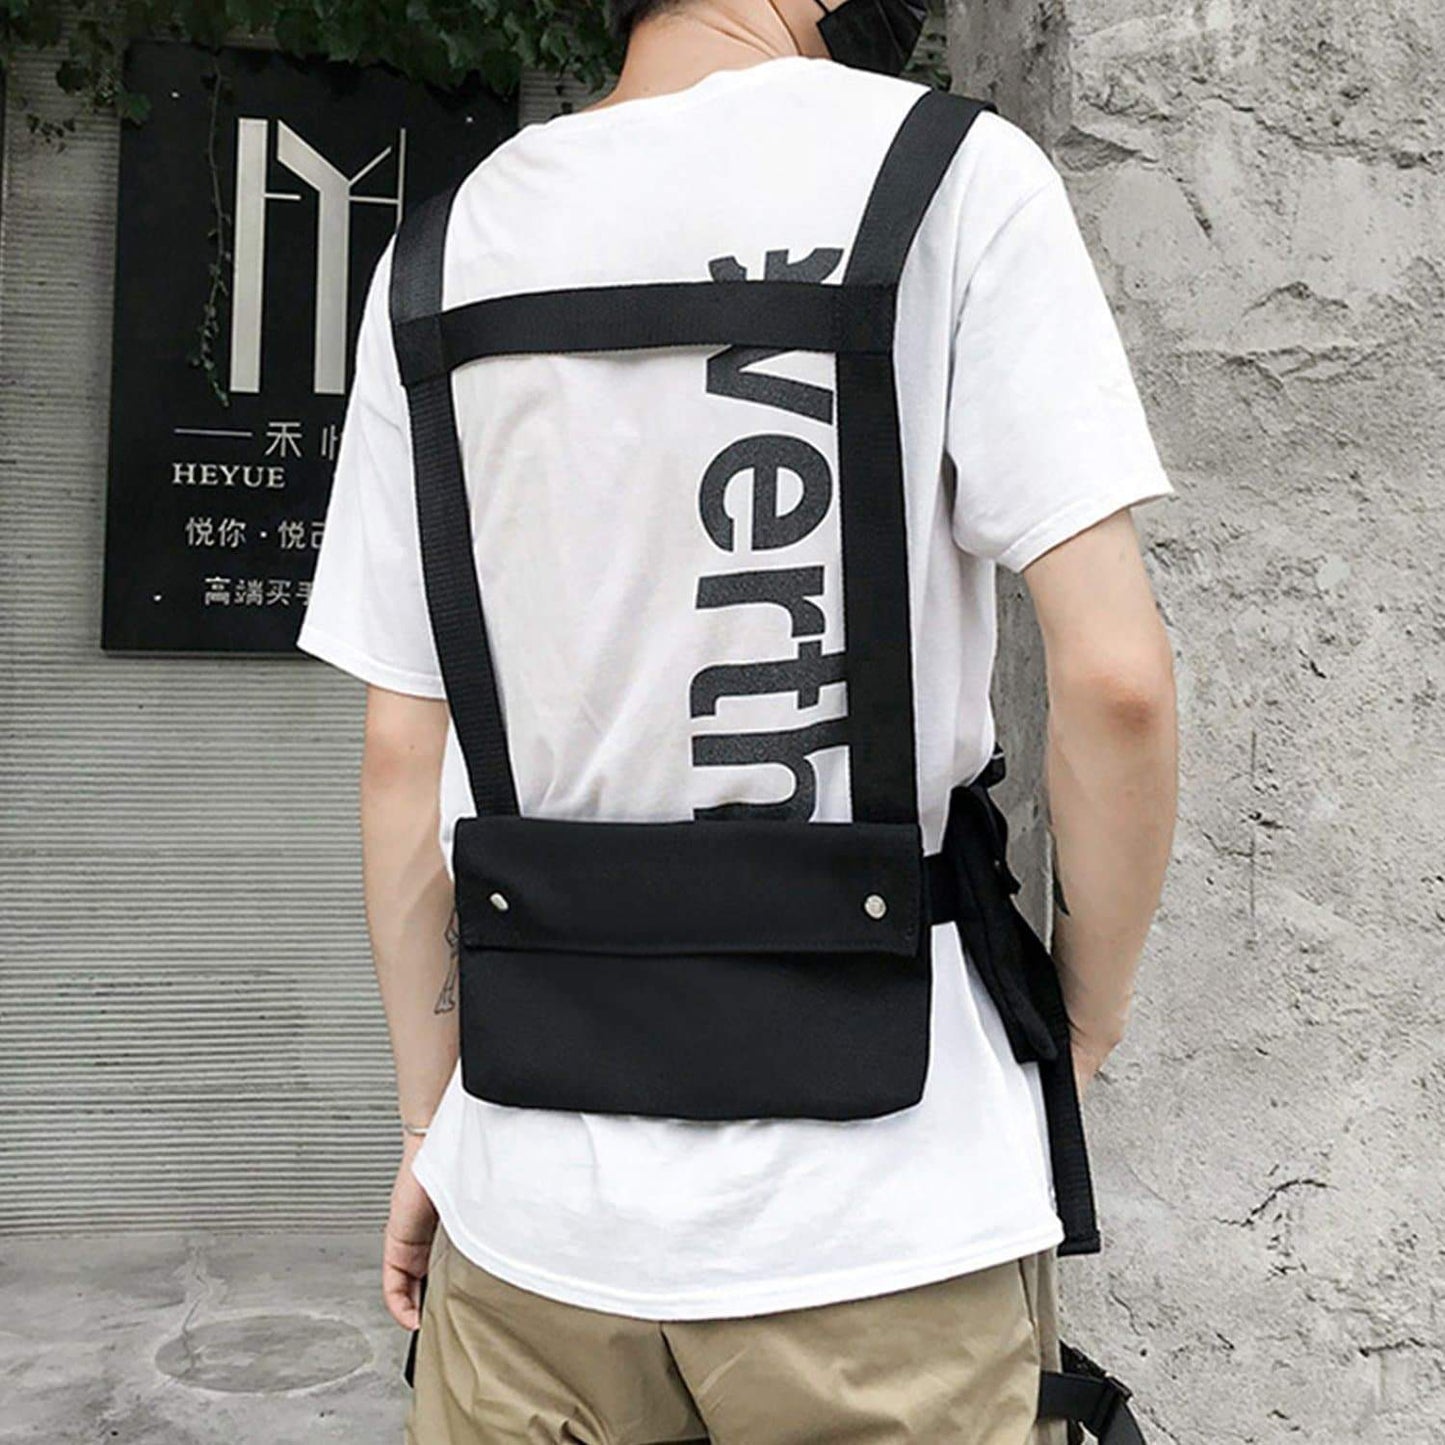 Vest Portable Waist Pack